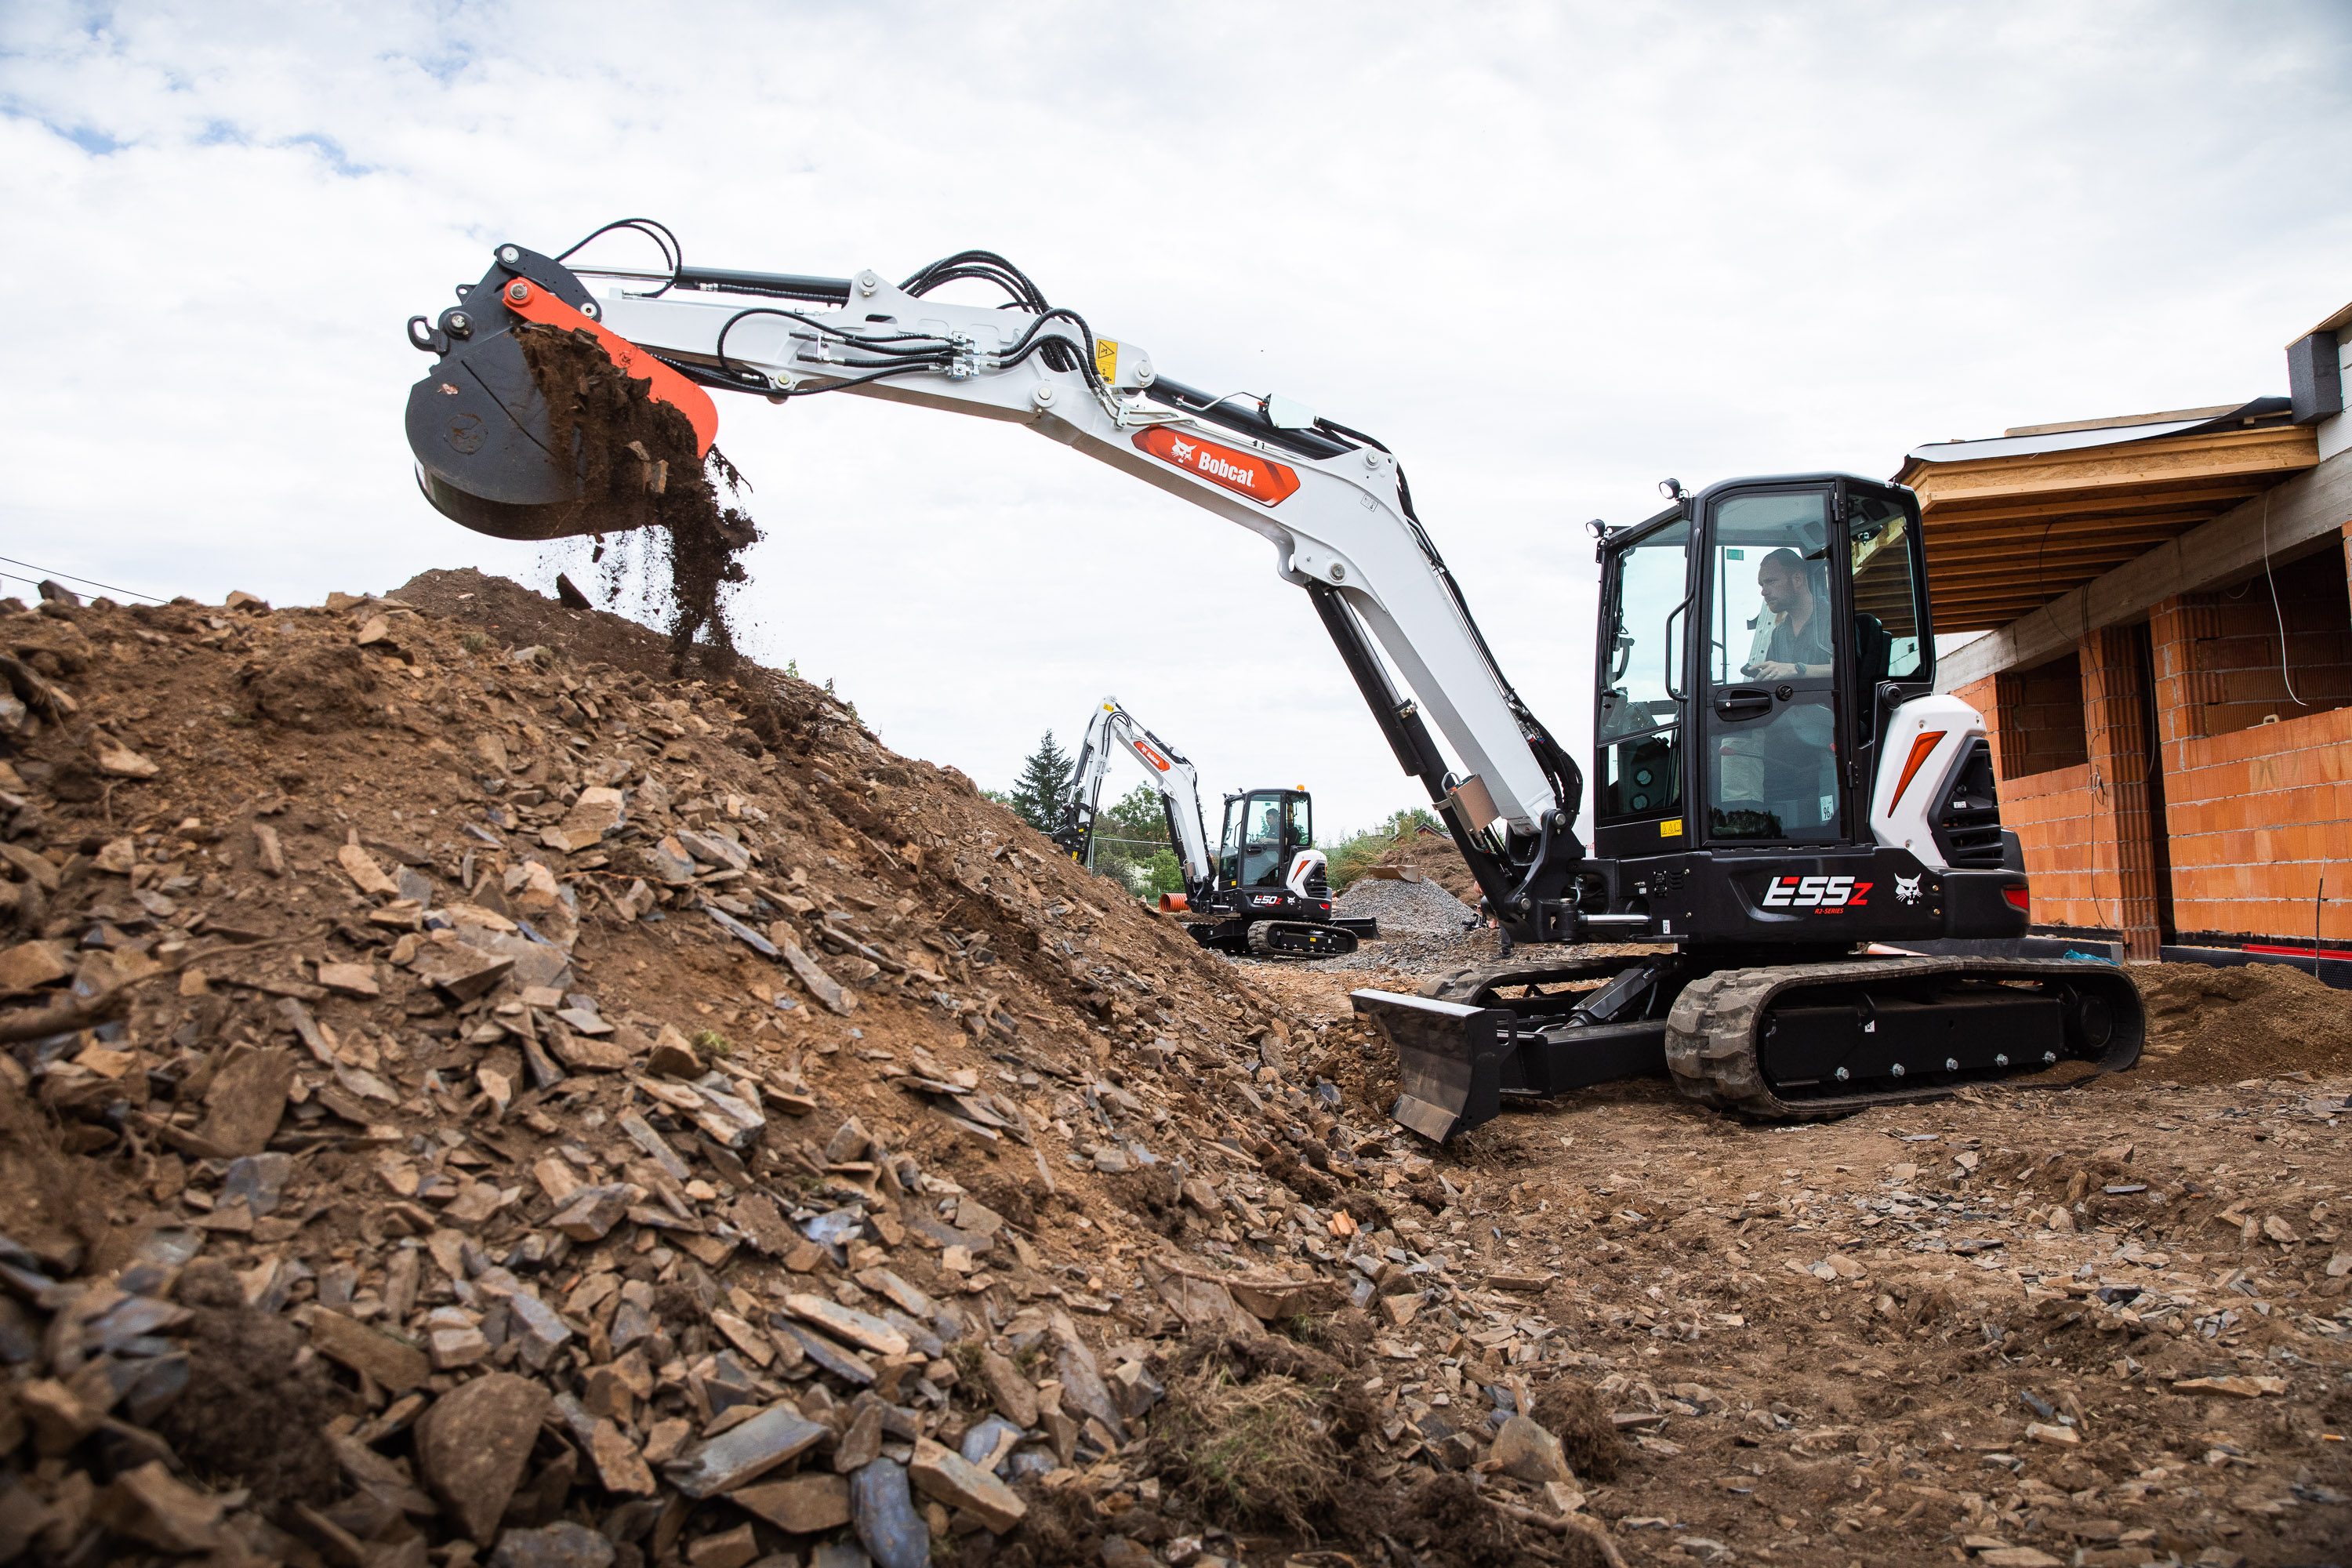 New R2-Series 5-6 tonne Mini-Excavators from Bobcat